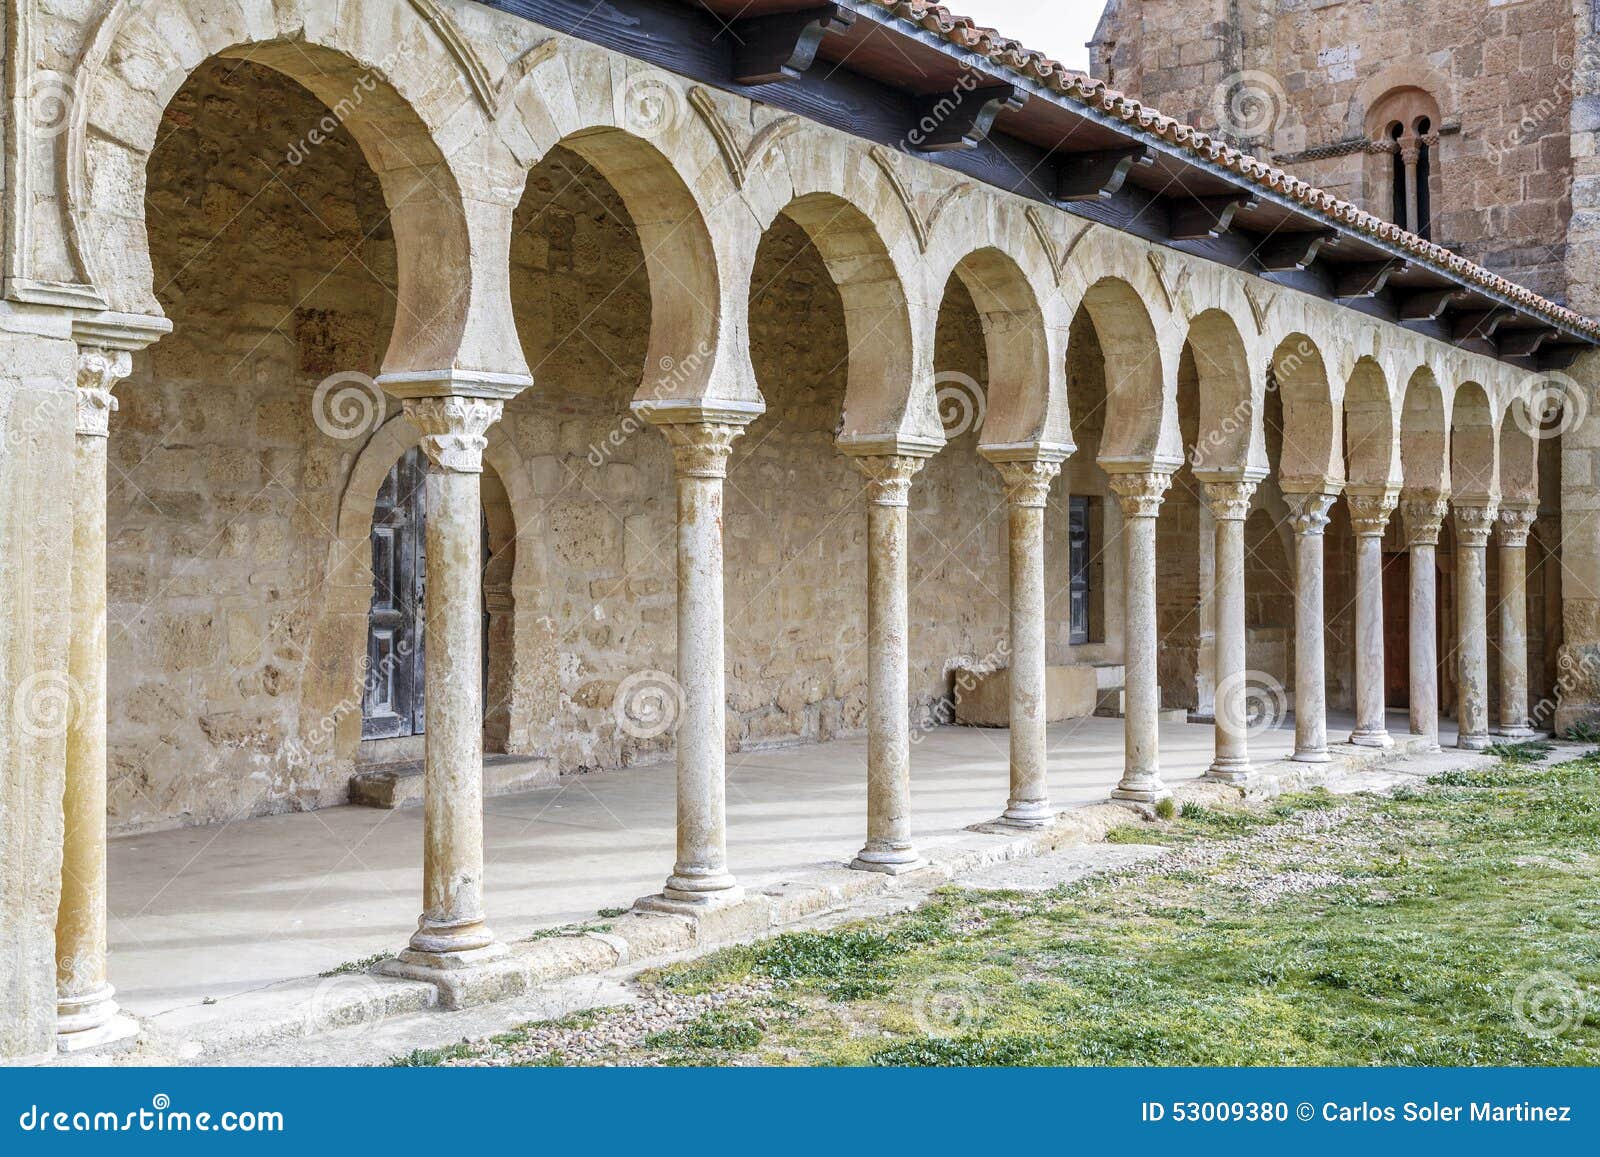 mozarabic monastery of san miguel de escalada in leon